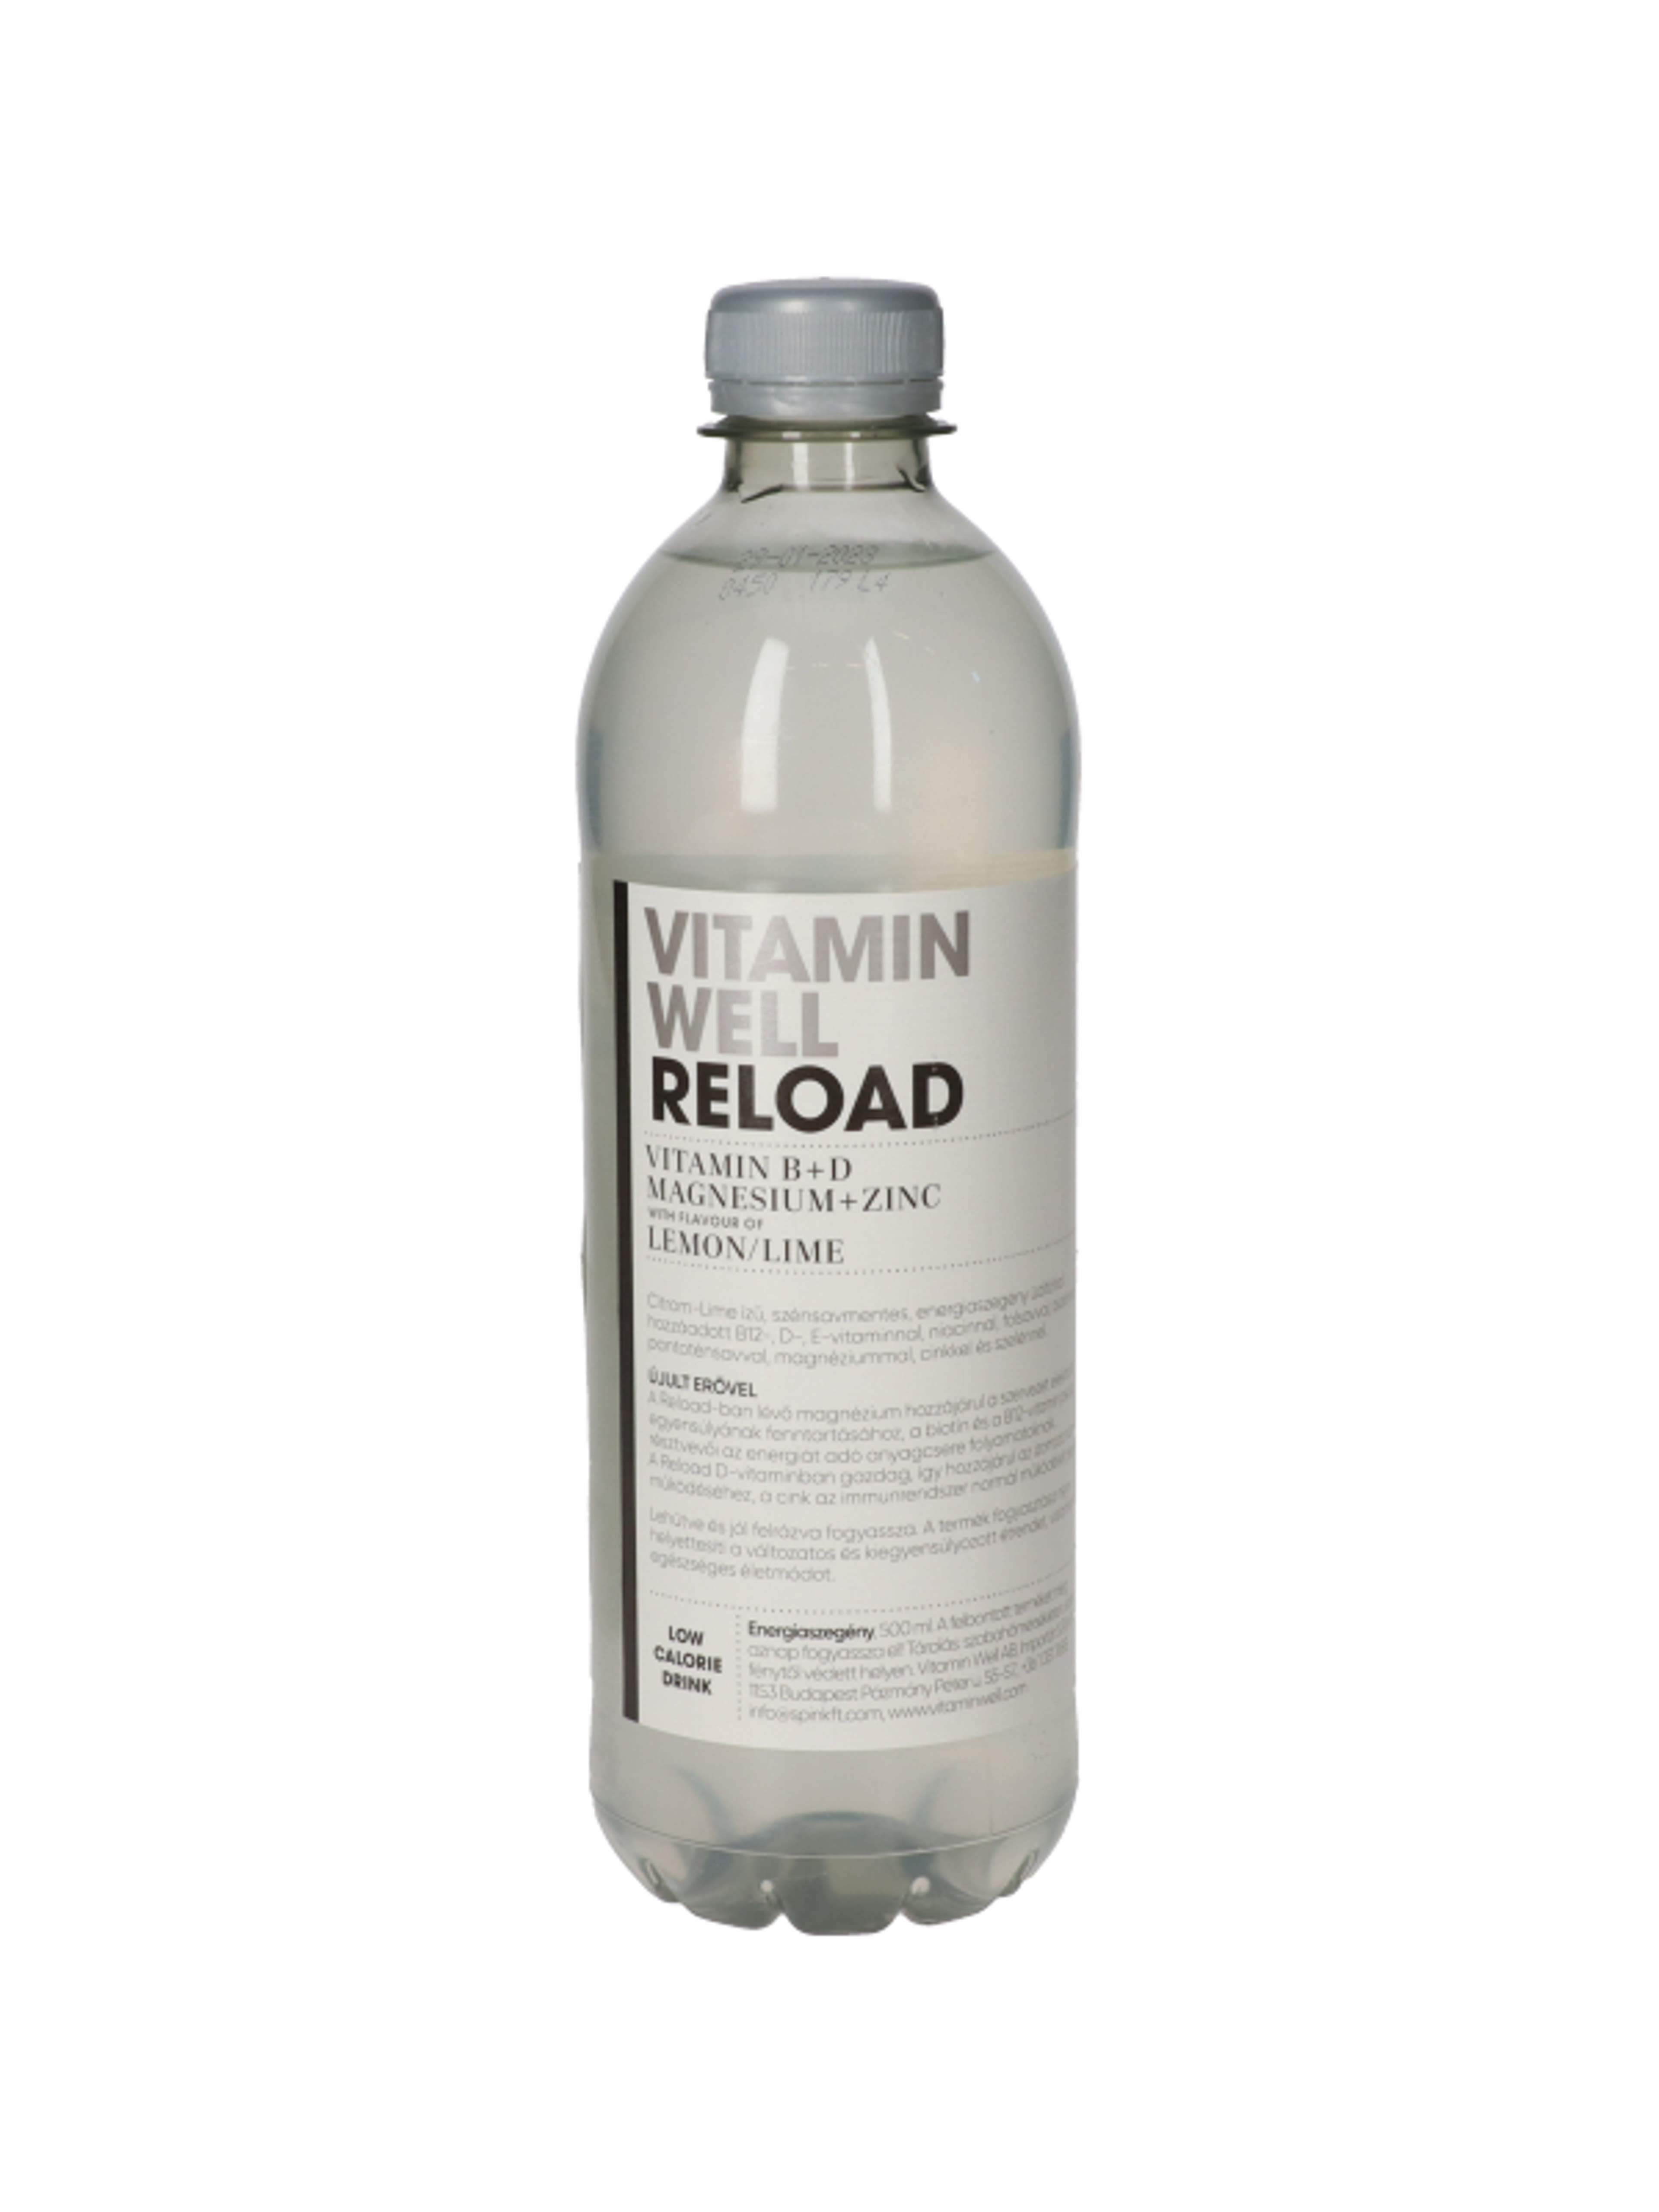 Vitamin Well Reload citrom-lime ízű, szénsavmentes, energiaszegény üdítőital - 500 ml